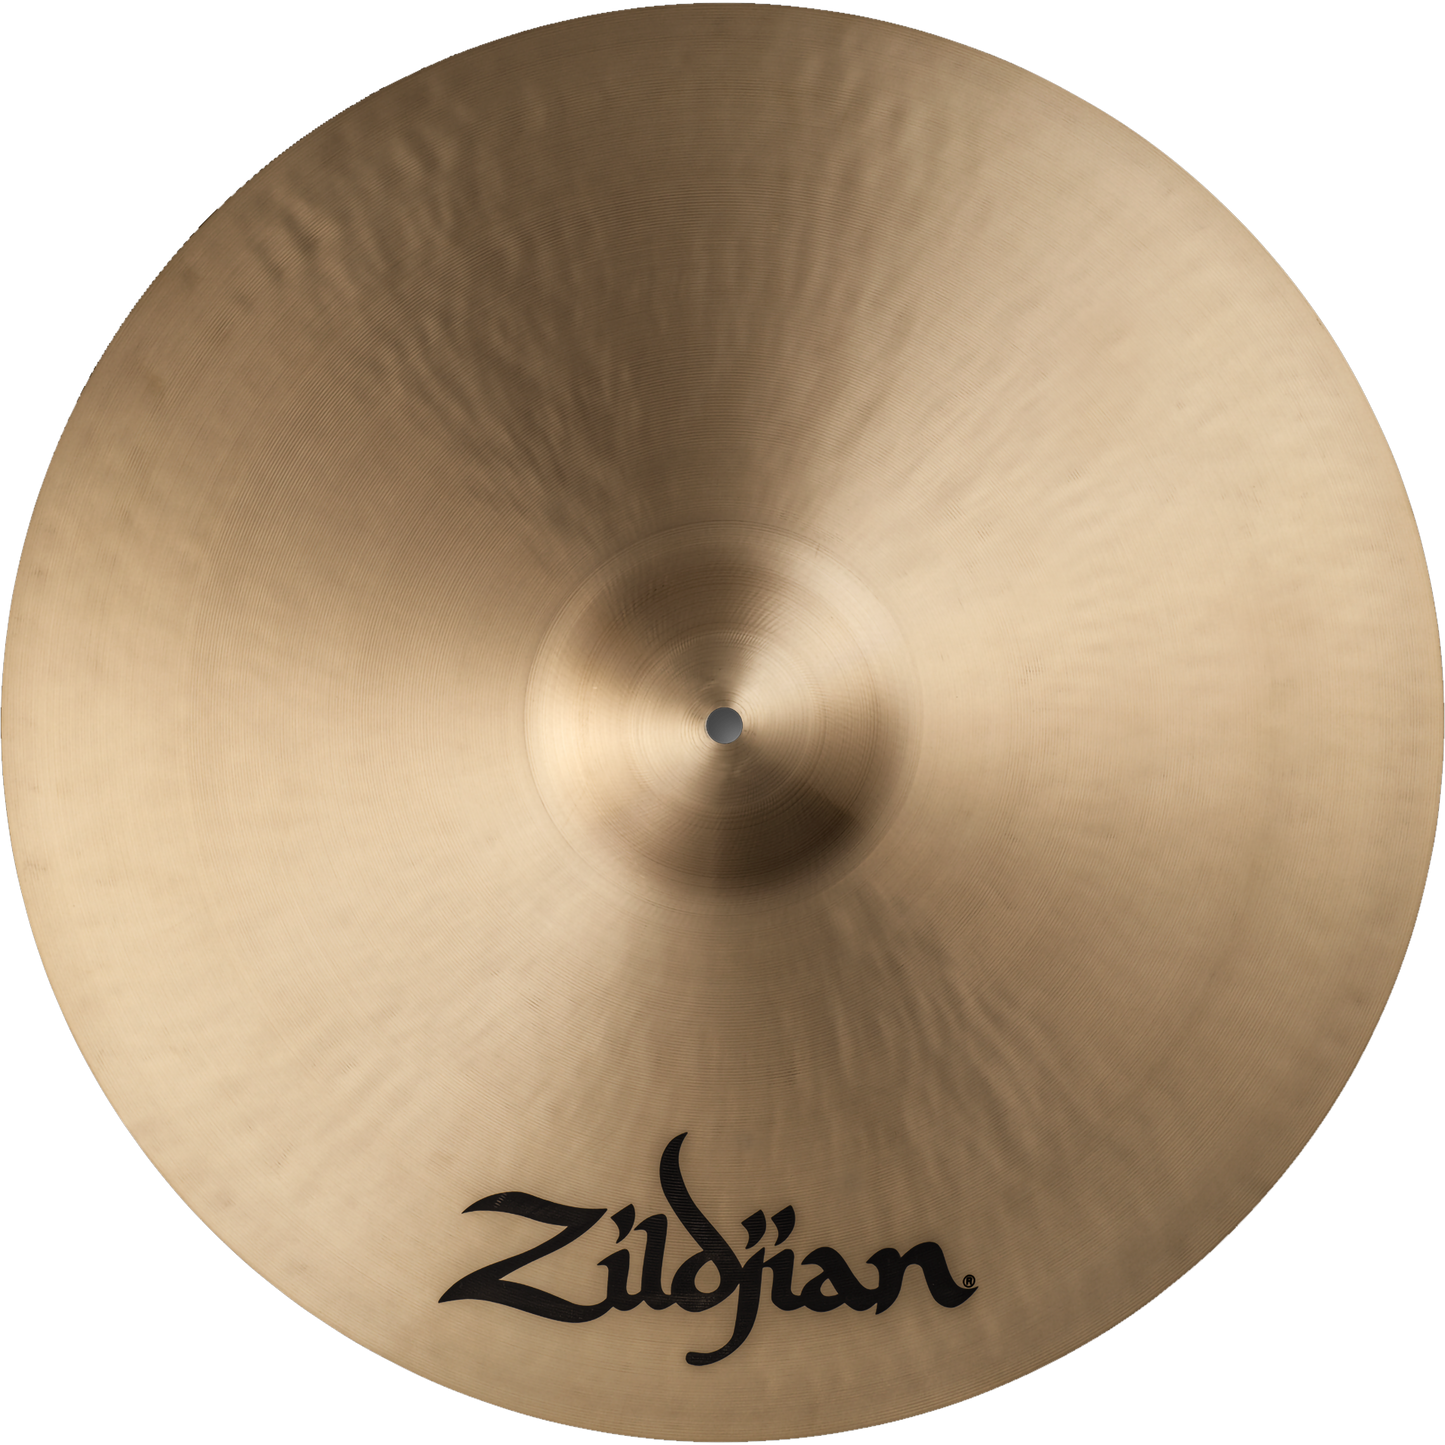 Zildjian 20” K Series Ride Cymbal